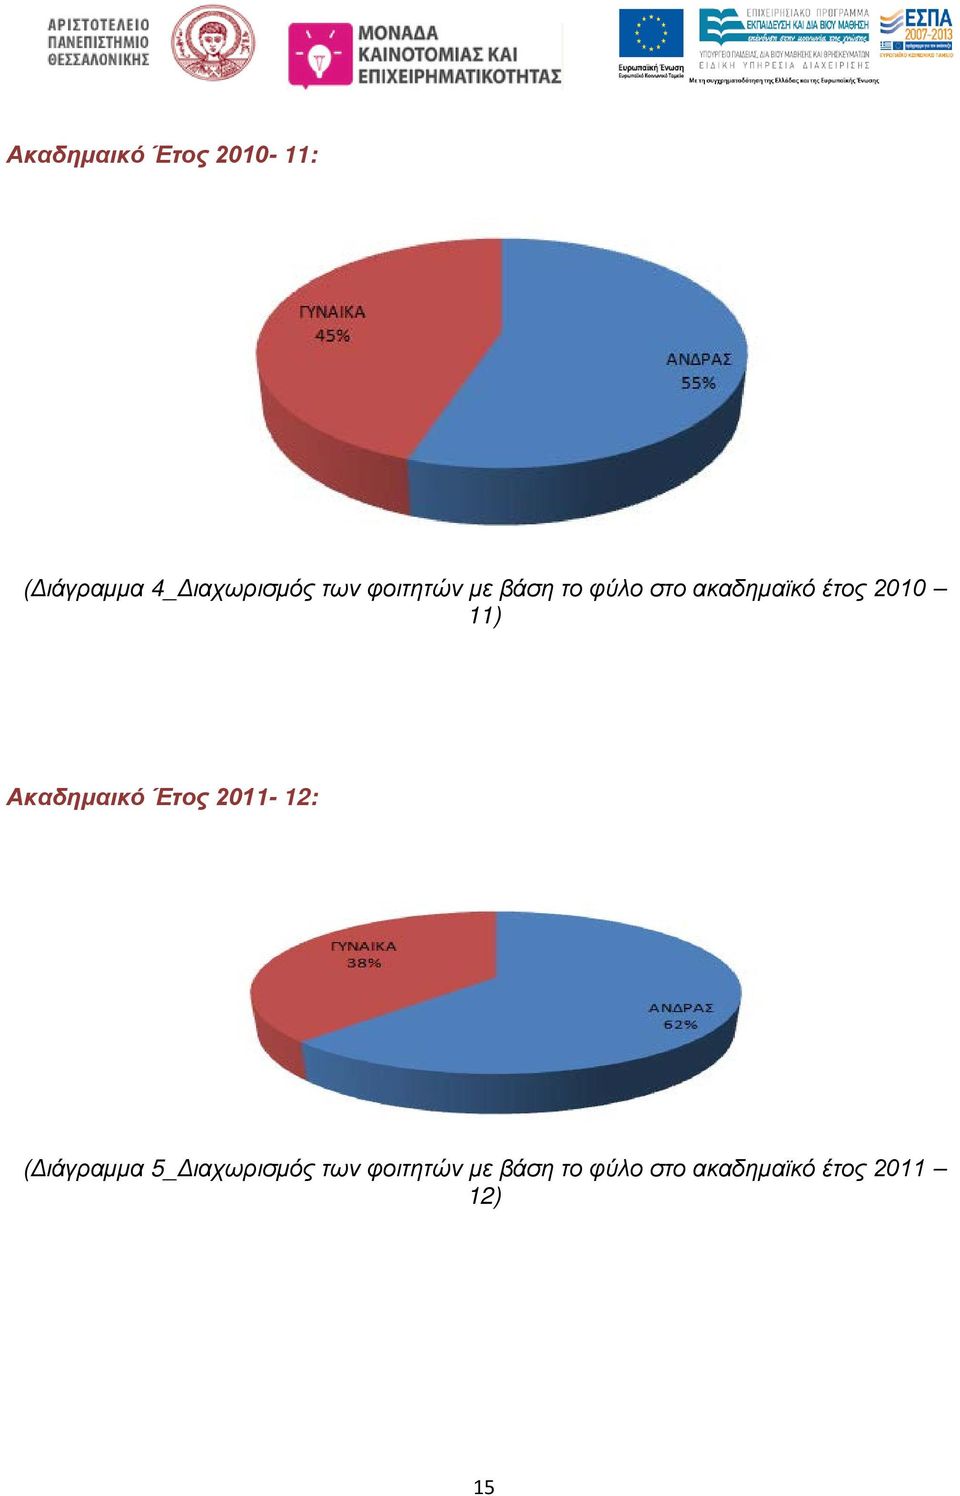 Ακαδημαικό Έτος 2011-12: (Διάγραμμα 5_Διαχωρισμός των